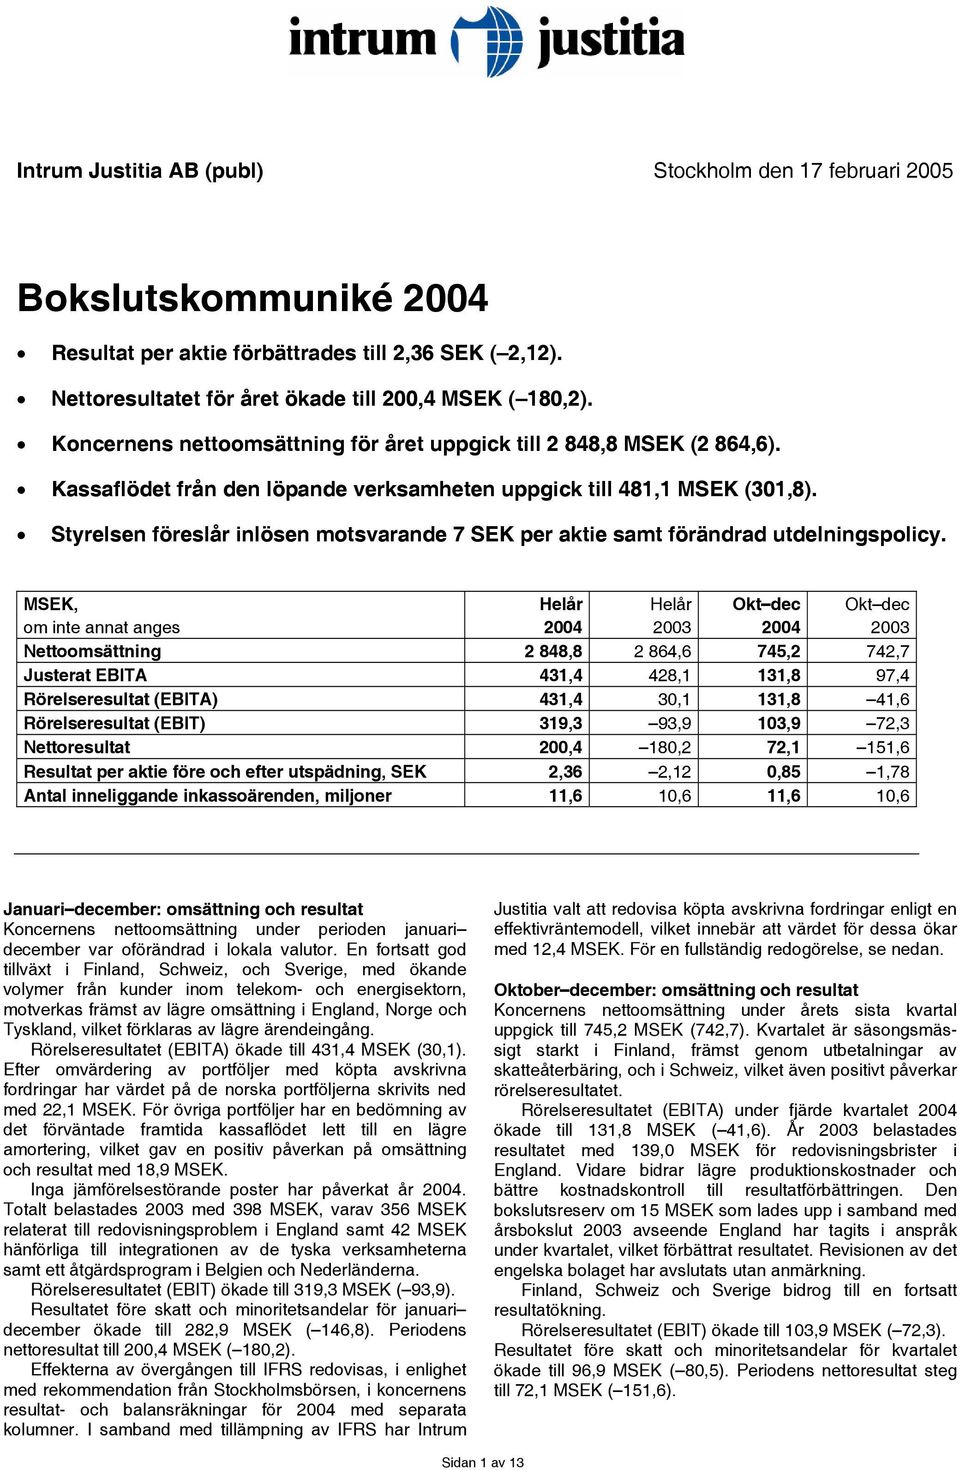 Styrelsen föreslår inlösen motsvarande 7 SEK per aktie samt förändrad utdelningspolicy.